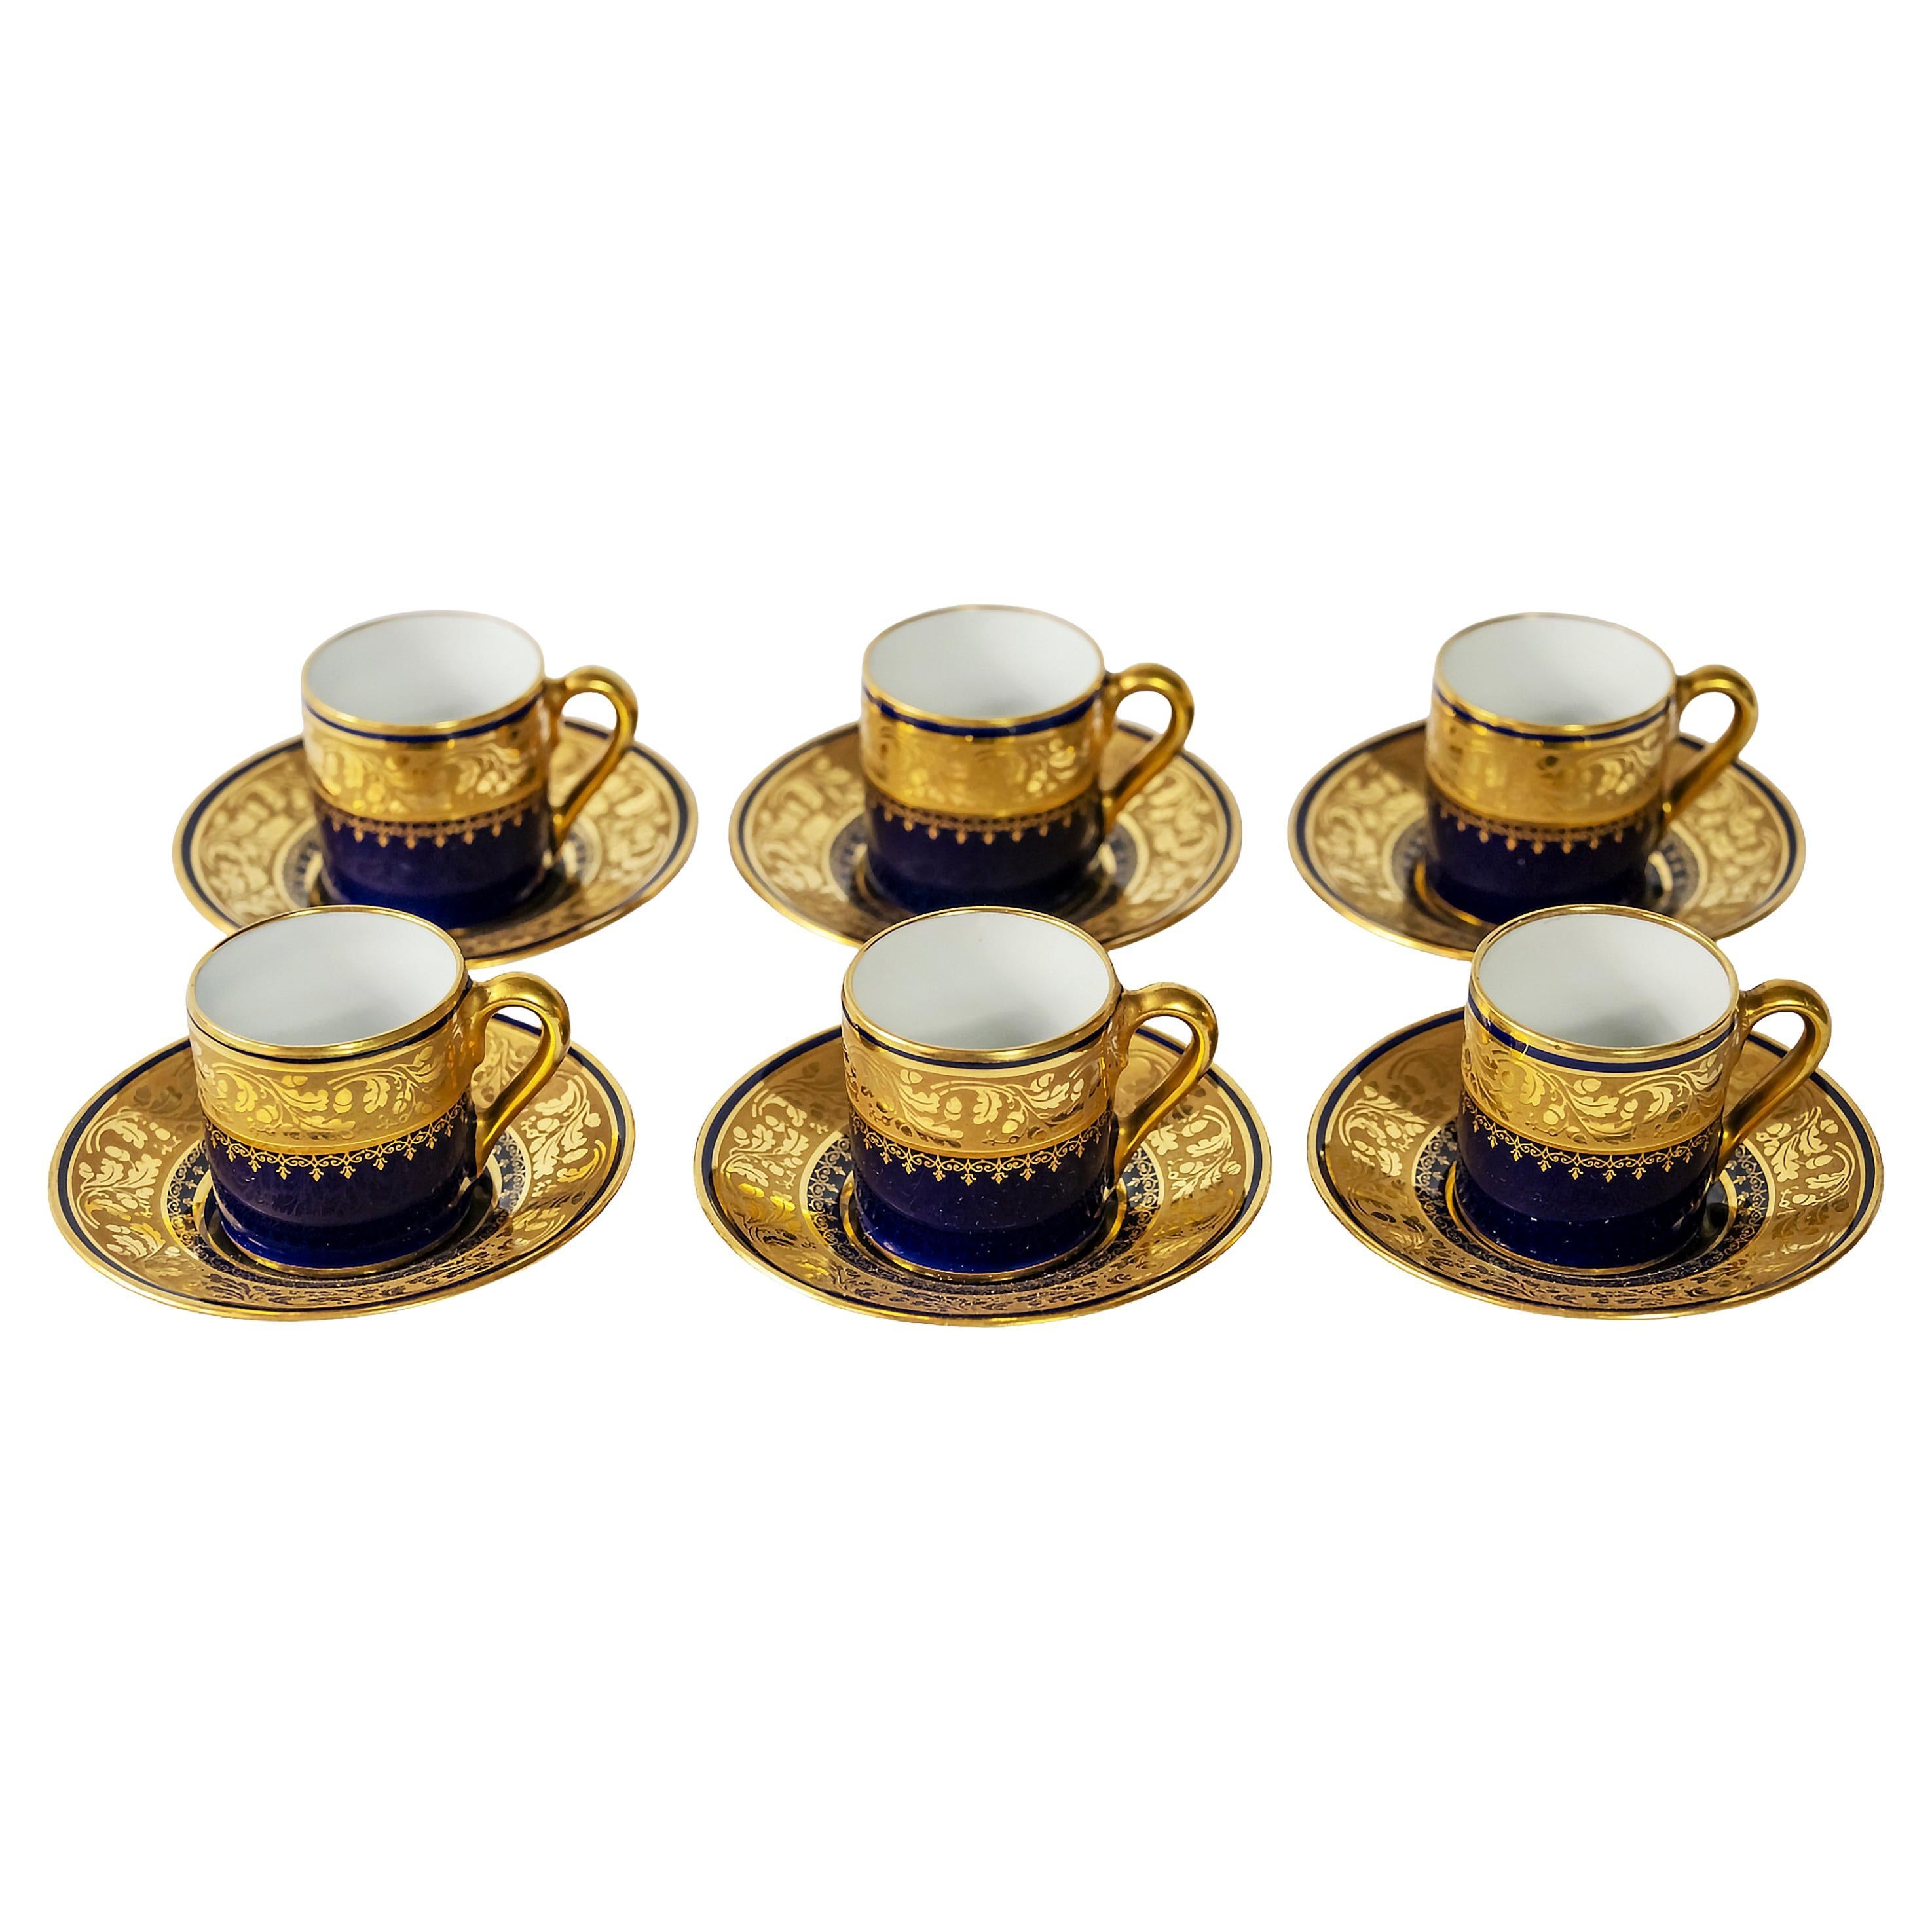 Set of 6 pcs. Limoges Porcelain Espresso Cups